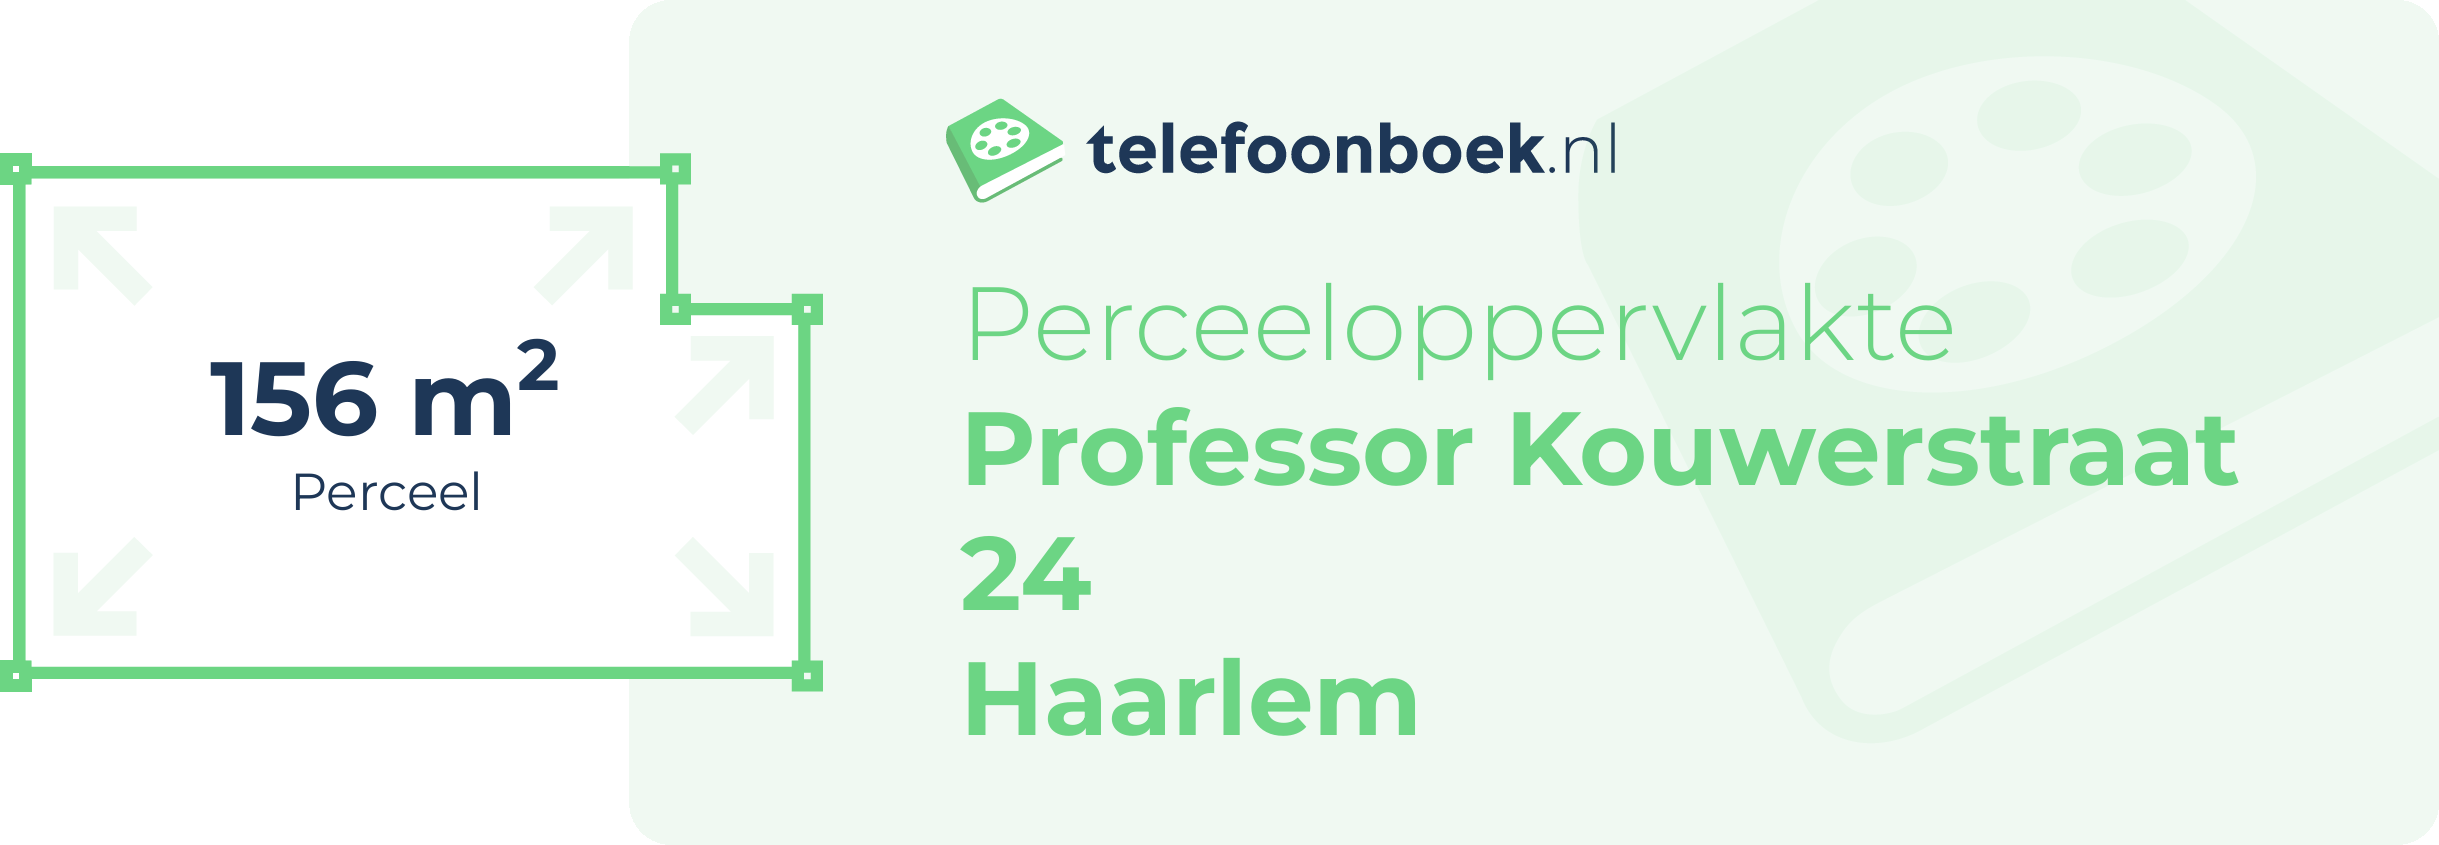 Perceeloppervlakte Professor Kouwerstraat 24 Haarlem